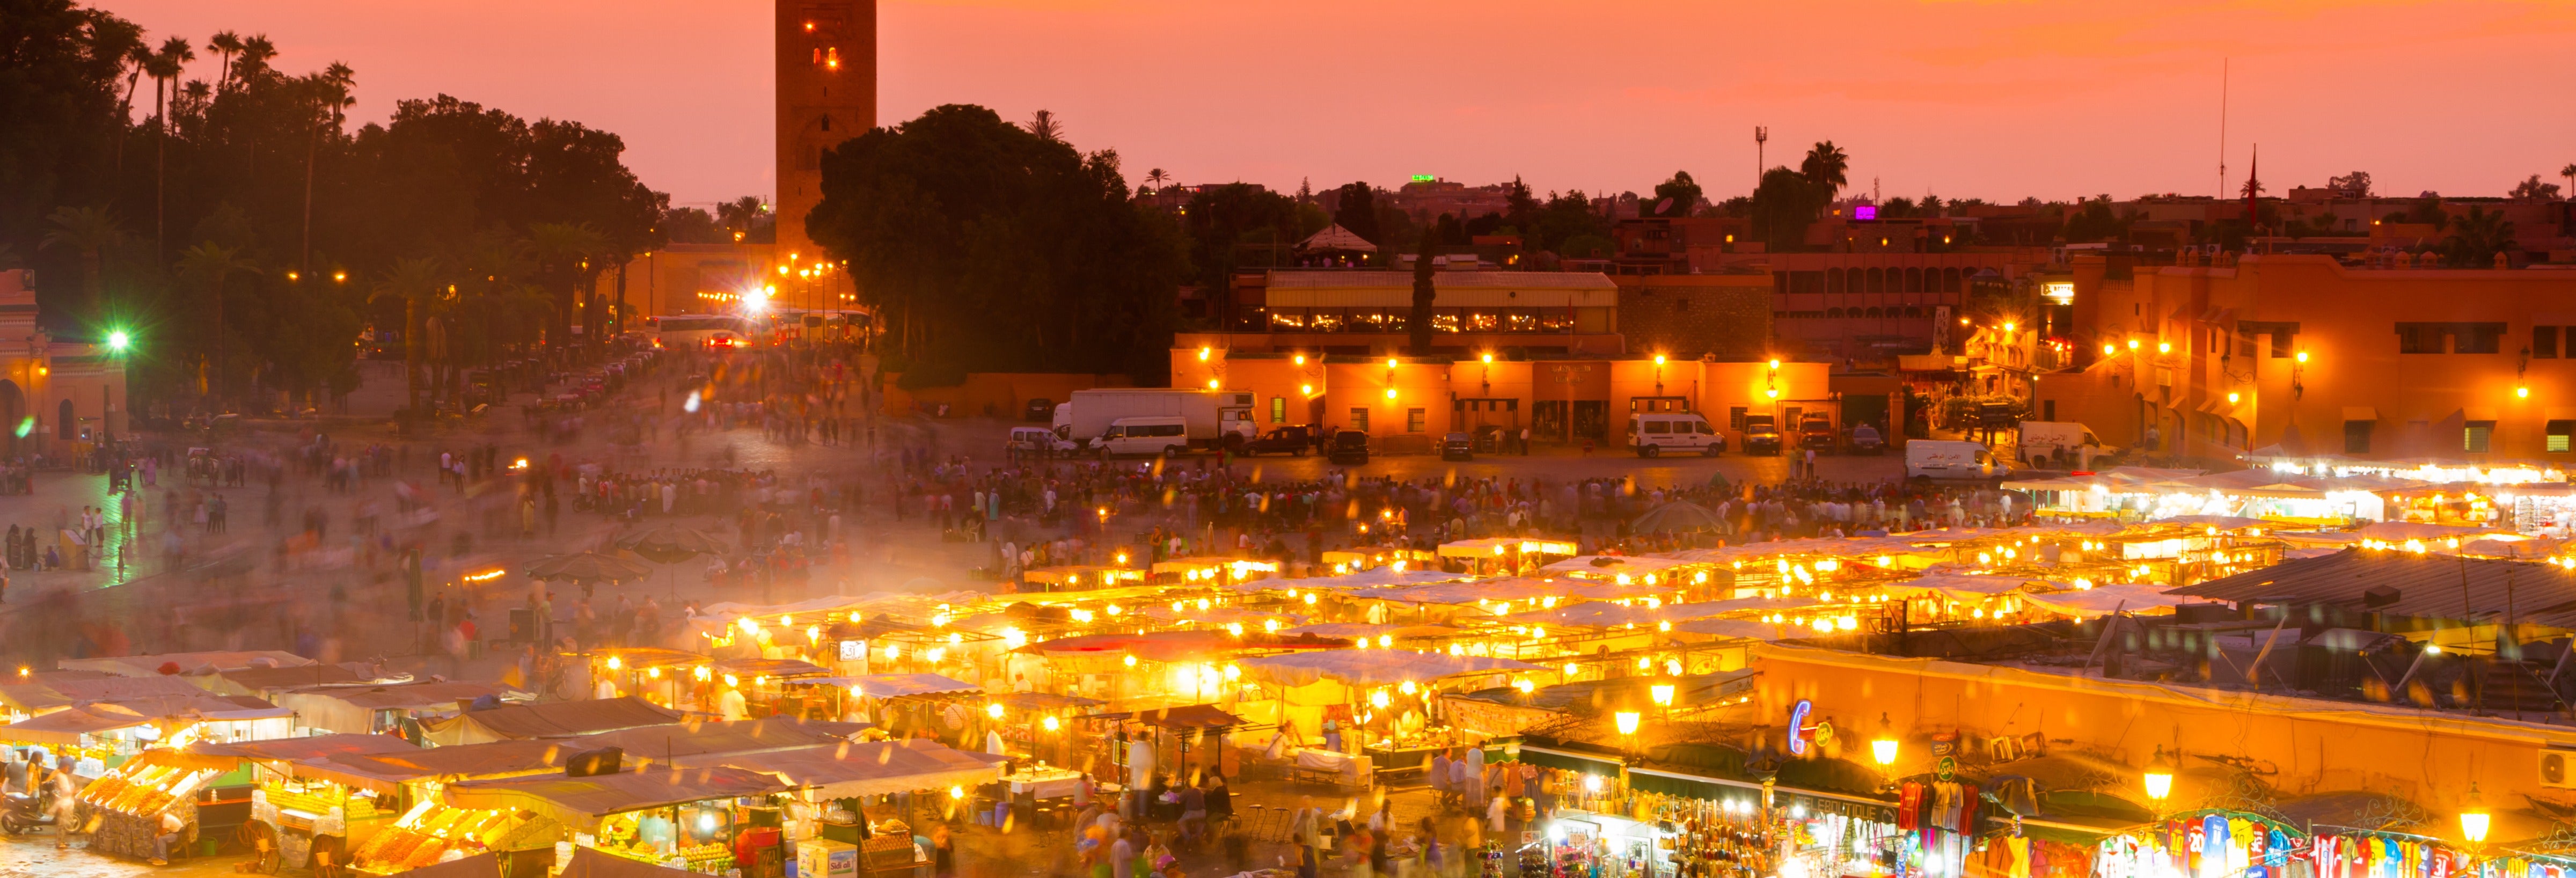 Marrakech de noche, tour en calesa